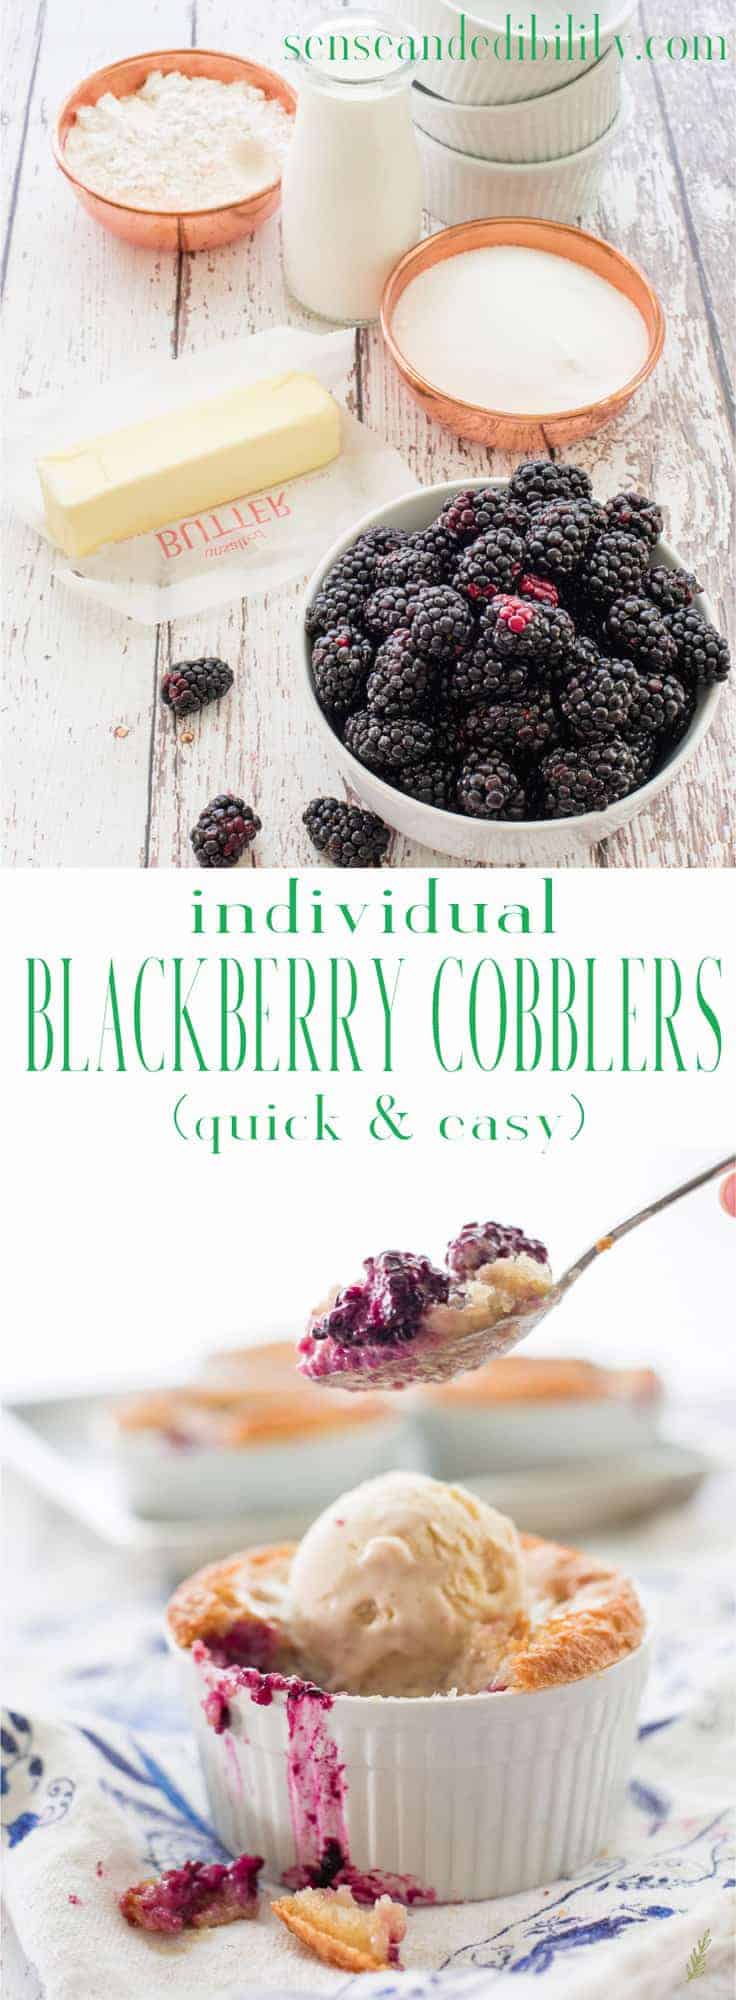 Blackberry Cobblers serveren de vruchten van de zomer op de meest verrukkelijke manier. Overgoten met een beslag korst, dit dessert is de perfecte zoete einde van uw zomermaaltijden. Vergeet niet om er een royale schep diepgevroren custard bij te serveren! #blackberrycobbler #cobbler # berrycobbler # dessert # alamode via @ediblesense